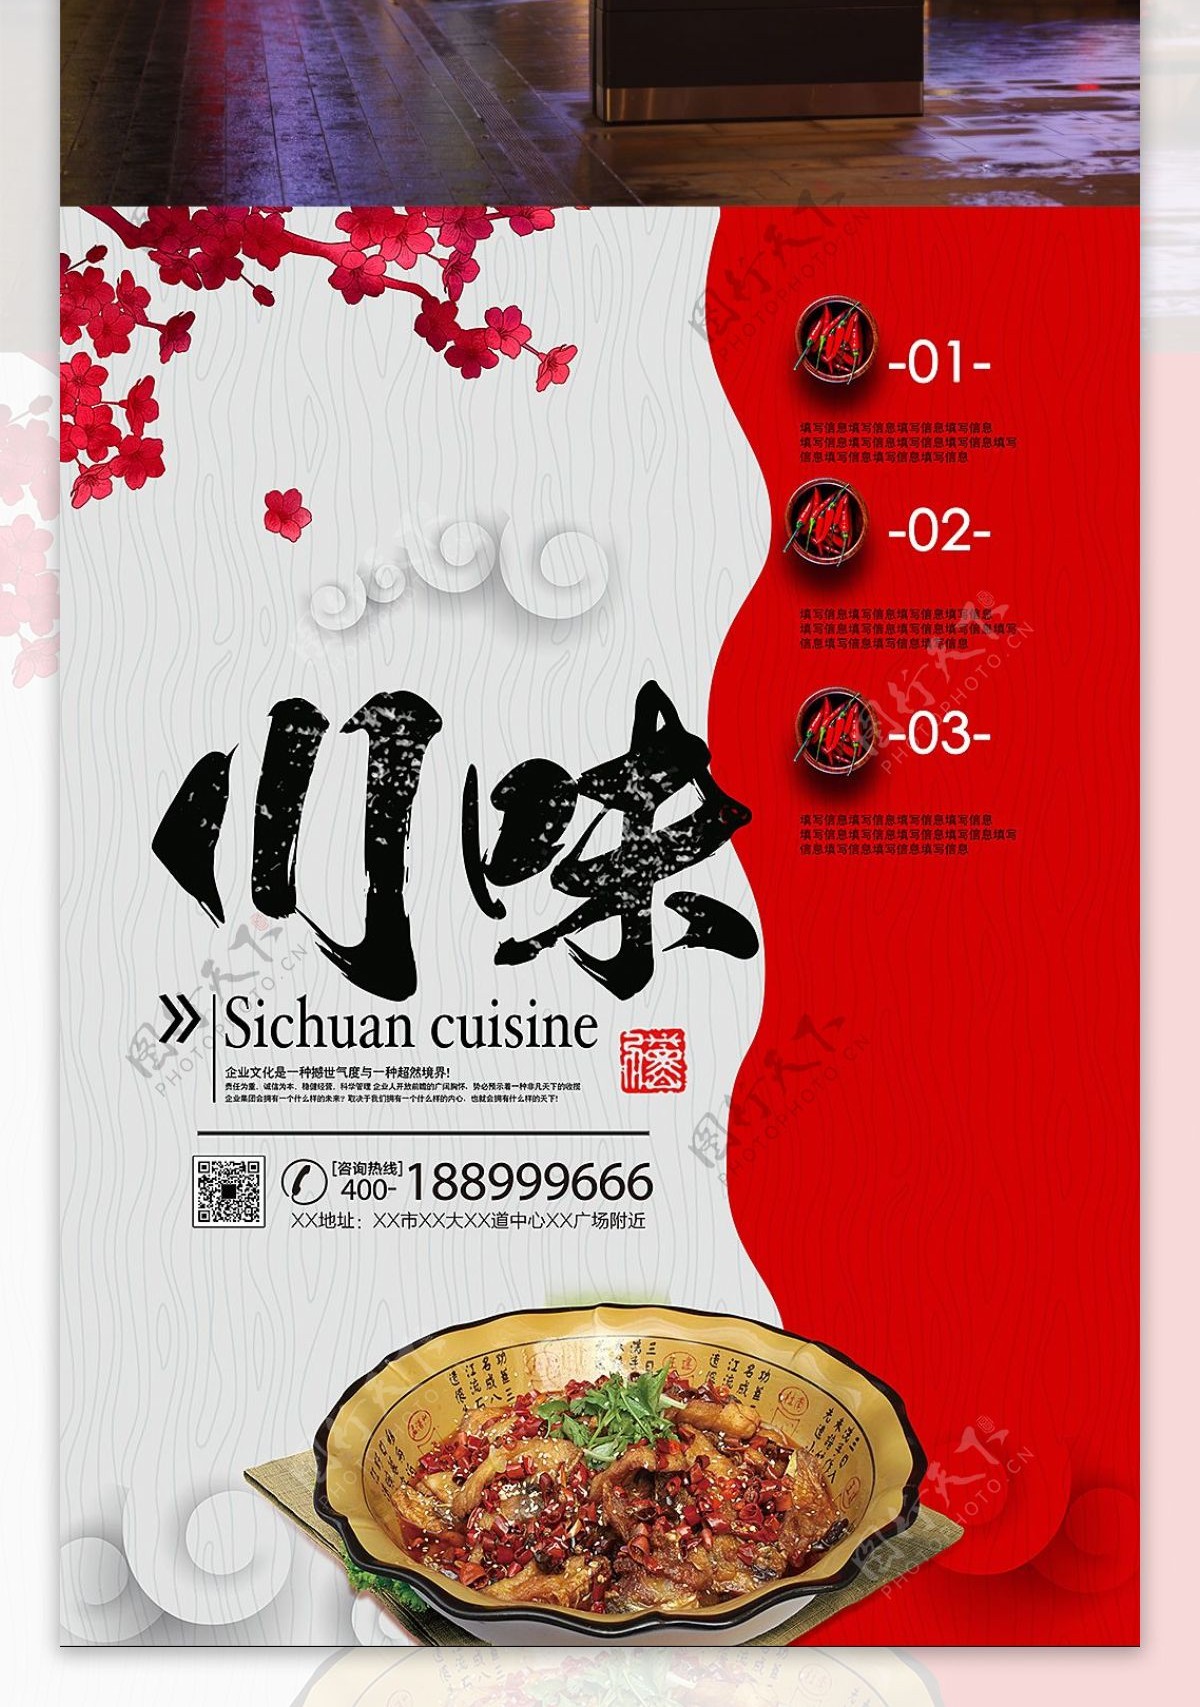 川菜文化宣传文化美食海报设计